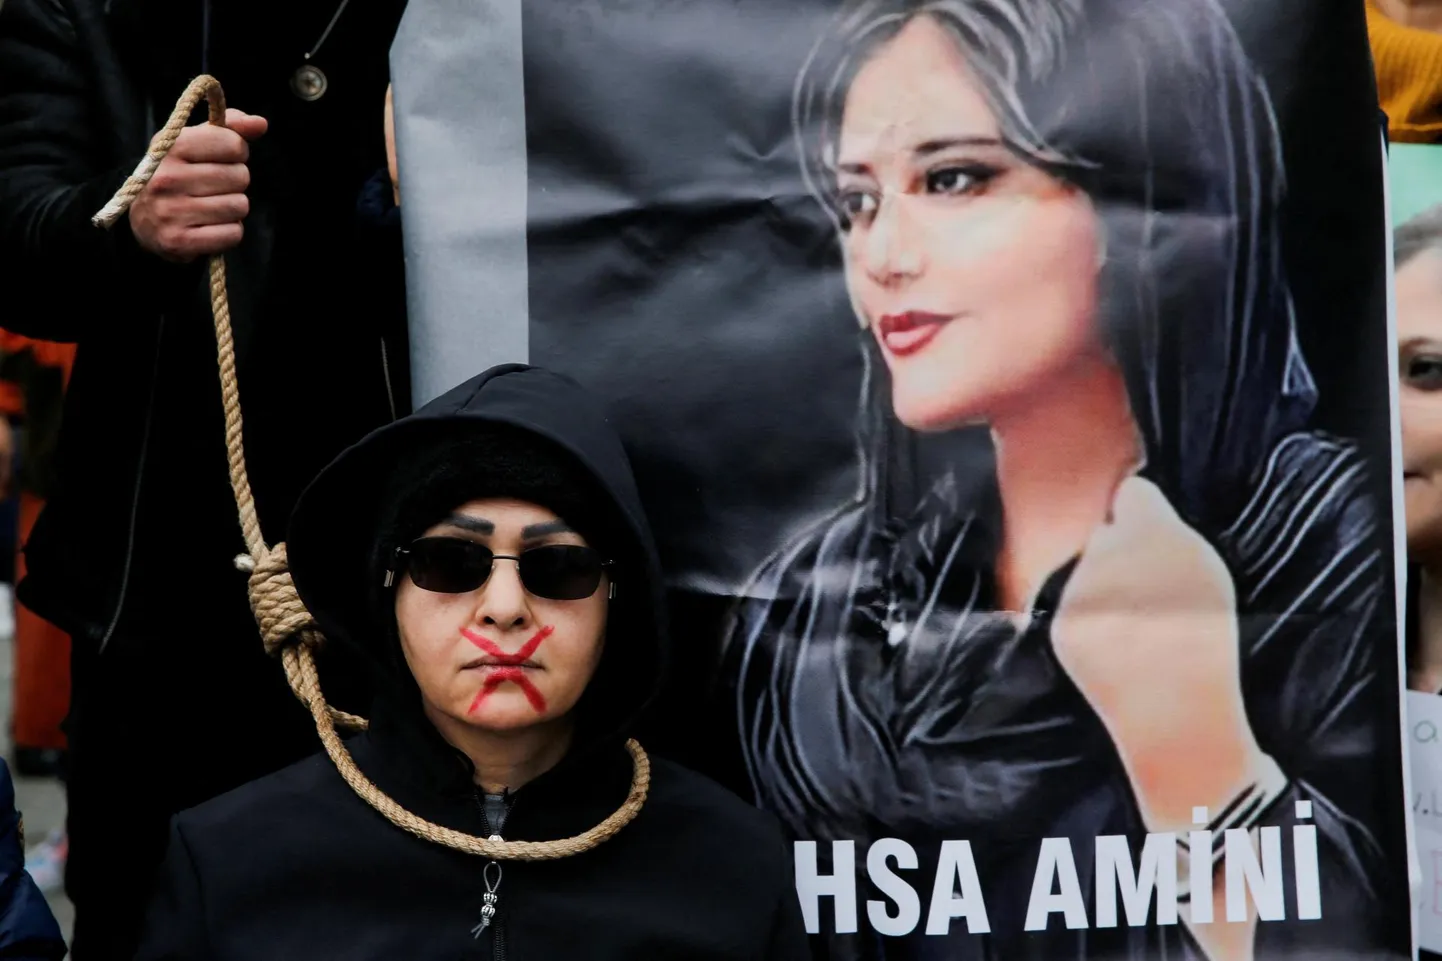 Iraani naised avaldasid pärast 22-aastase Mahsa Amini tapmist eelmise aasta lõpus meelt riiki valitseva islamistliku režiimi vastu. 